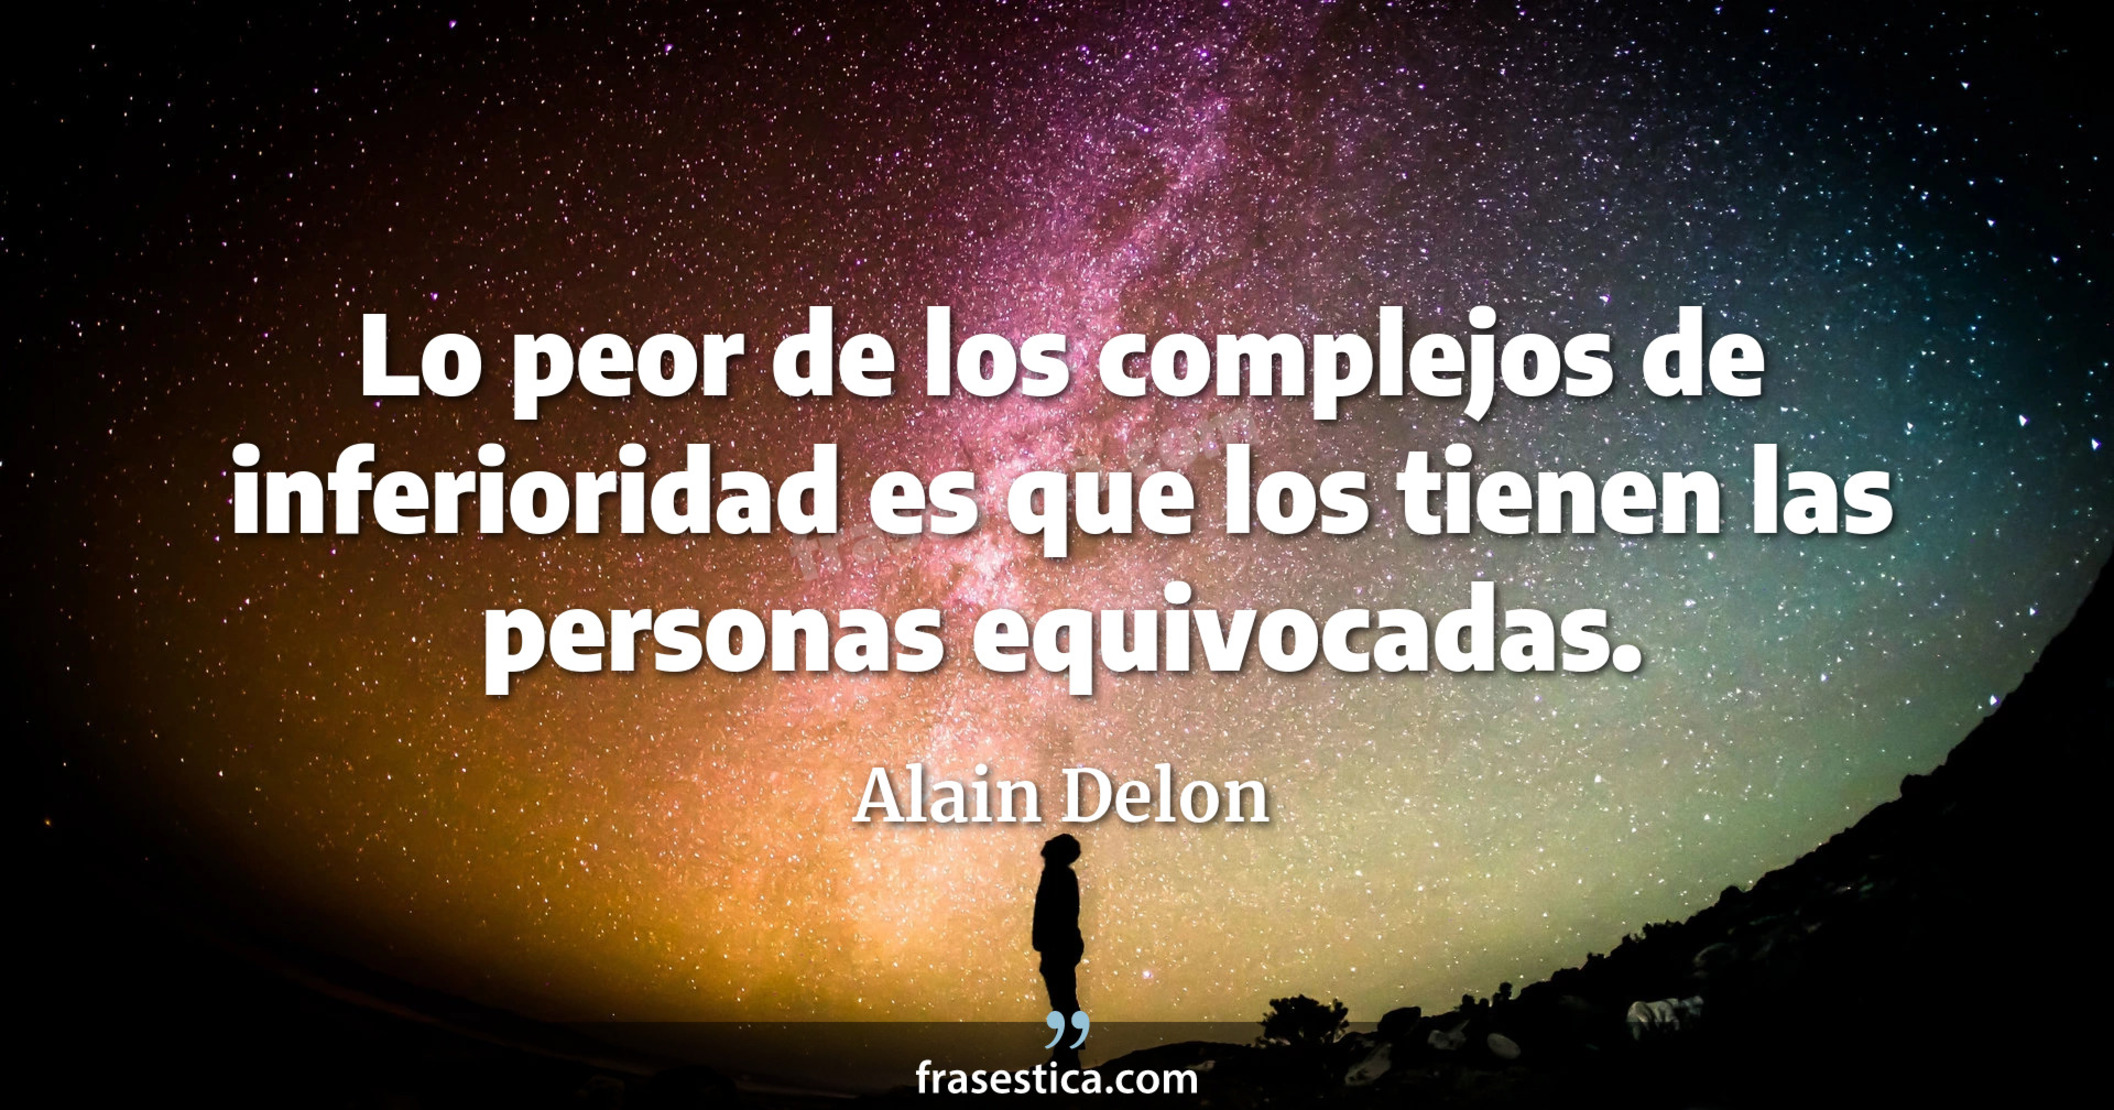 Lo peor de los complejos de inferioridad es que los tienen las personas equivocadas. - Alain Delon